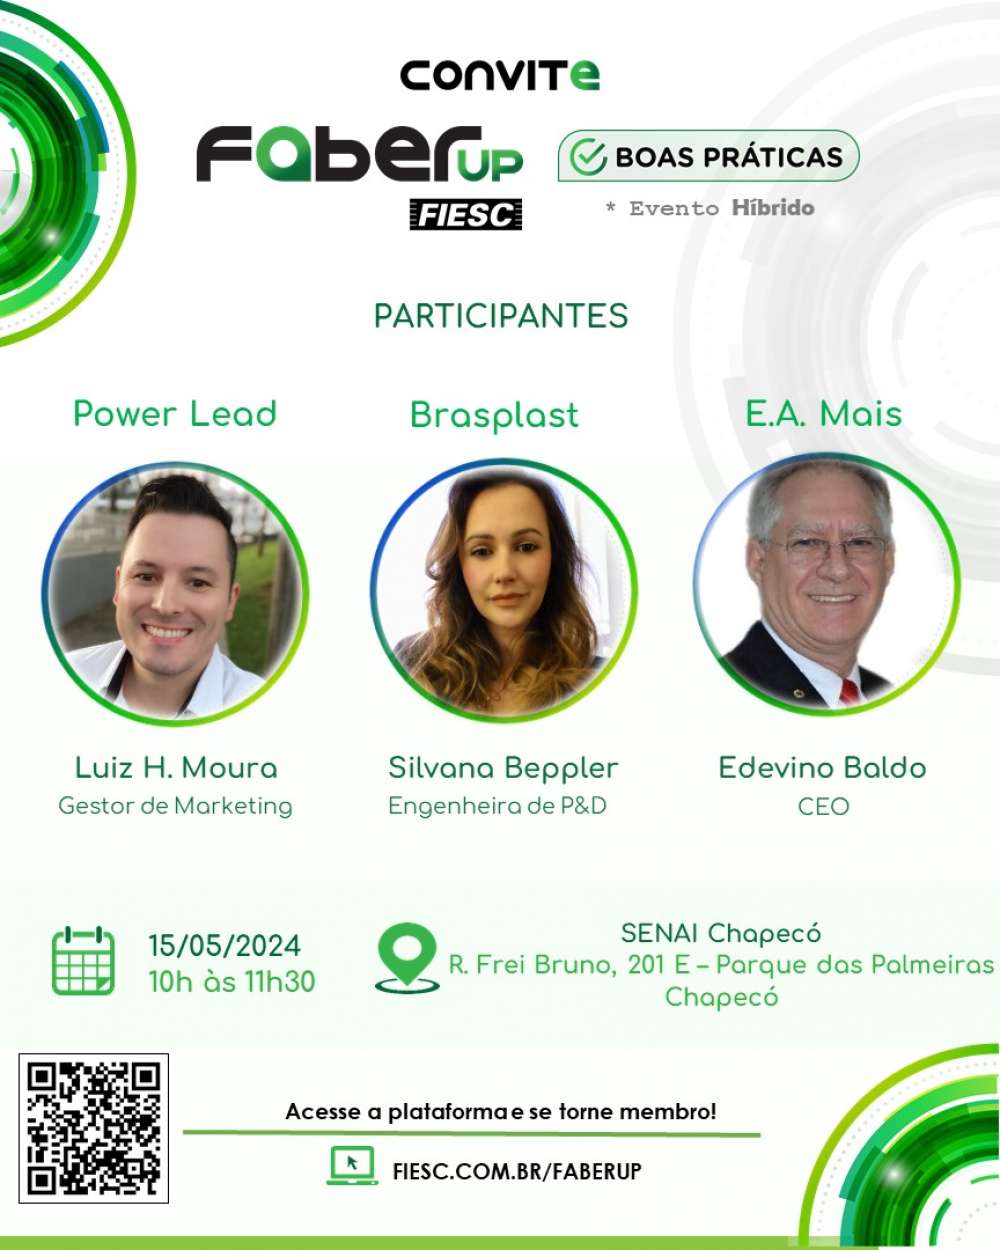 Faber Up promove encontro de inovação em Chapecó